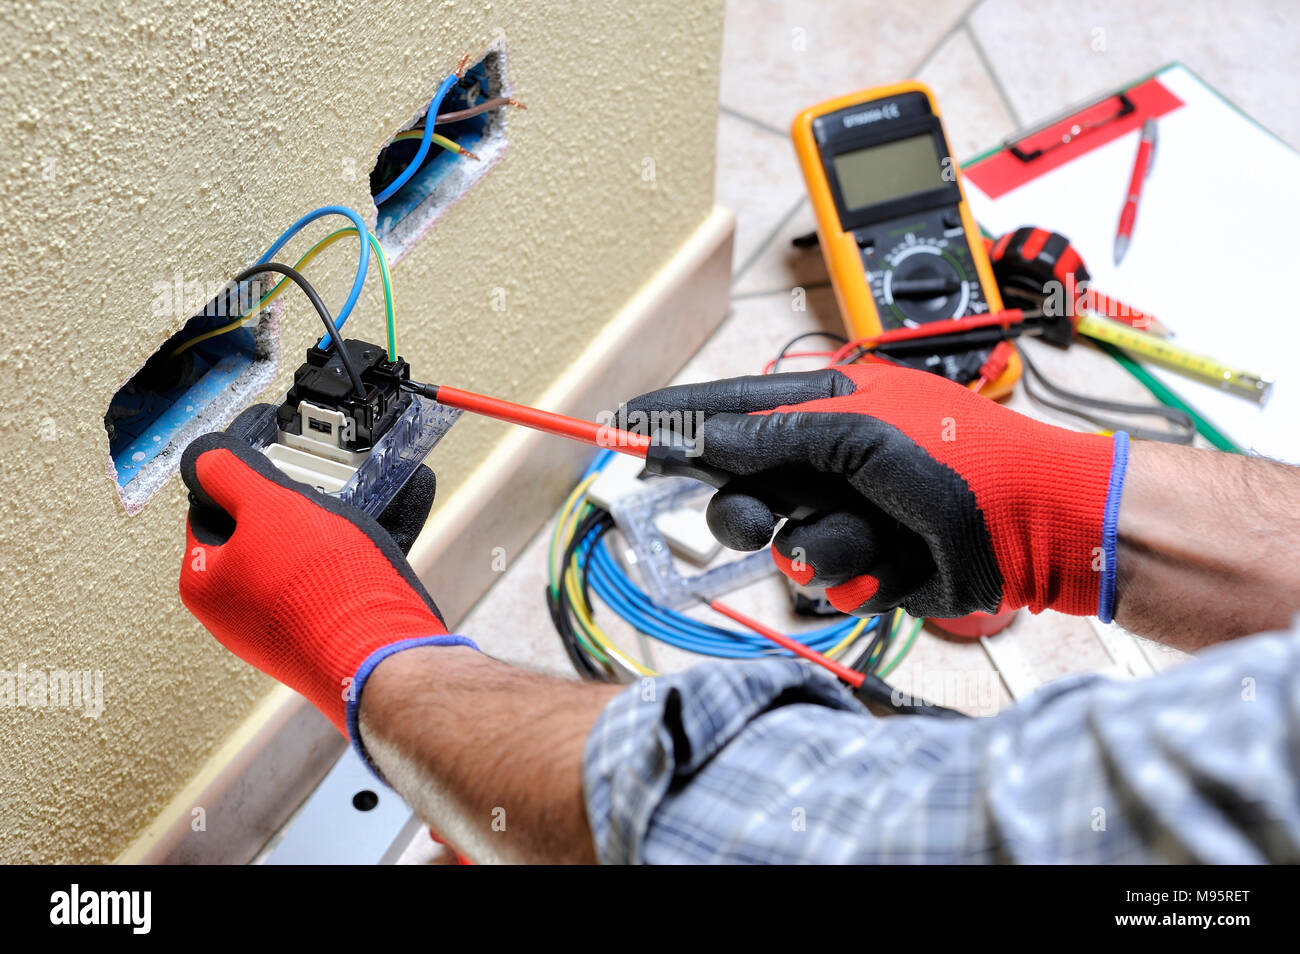 Elektriker Techniker bei der Arbeit Bausteine das Kabel zwischen die  Klemmen an eine Steckdose in einem Wohngebiet elektrische Installation  Stockfotografie - Alamy